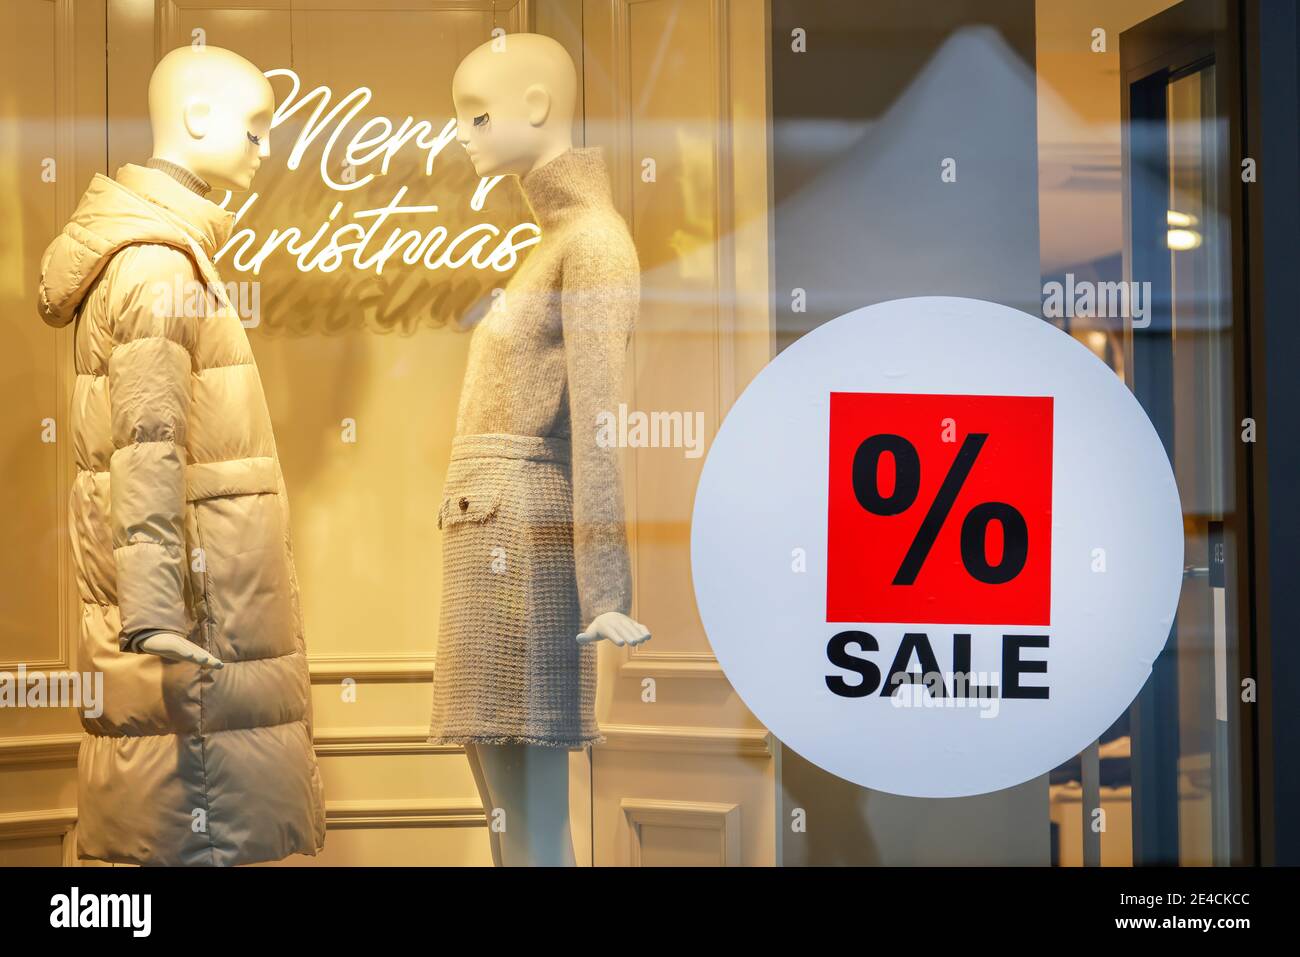 Essen, région de la Ruhr, Rhénanie-du-Nord-Westphalie, Allemagne - vitrine d'un magasin de mode à l'heure de Noël avec des offres spéciales. Banque D'Images